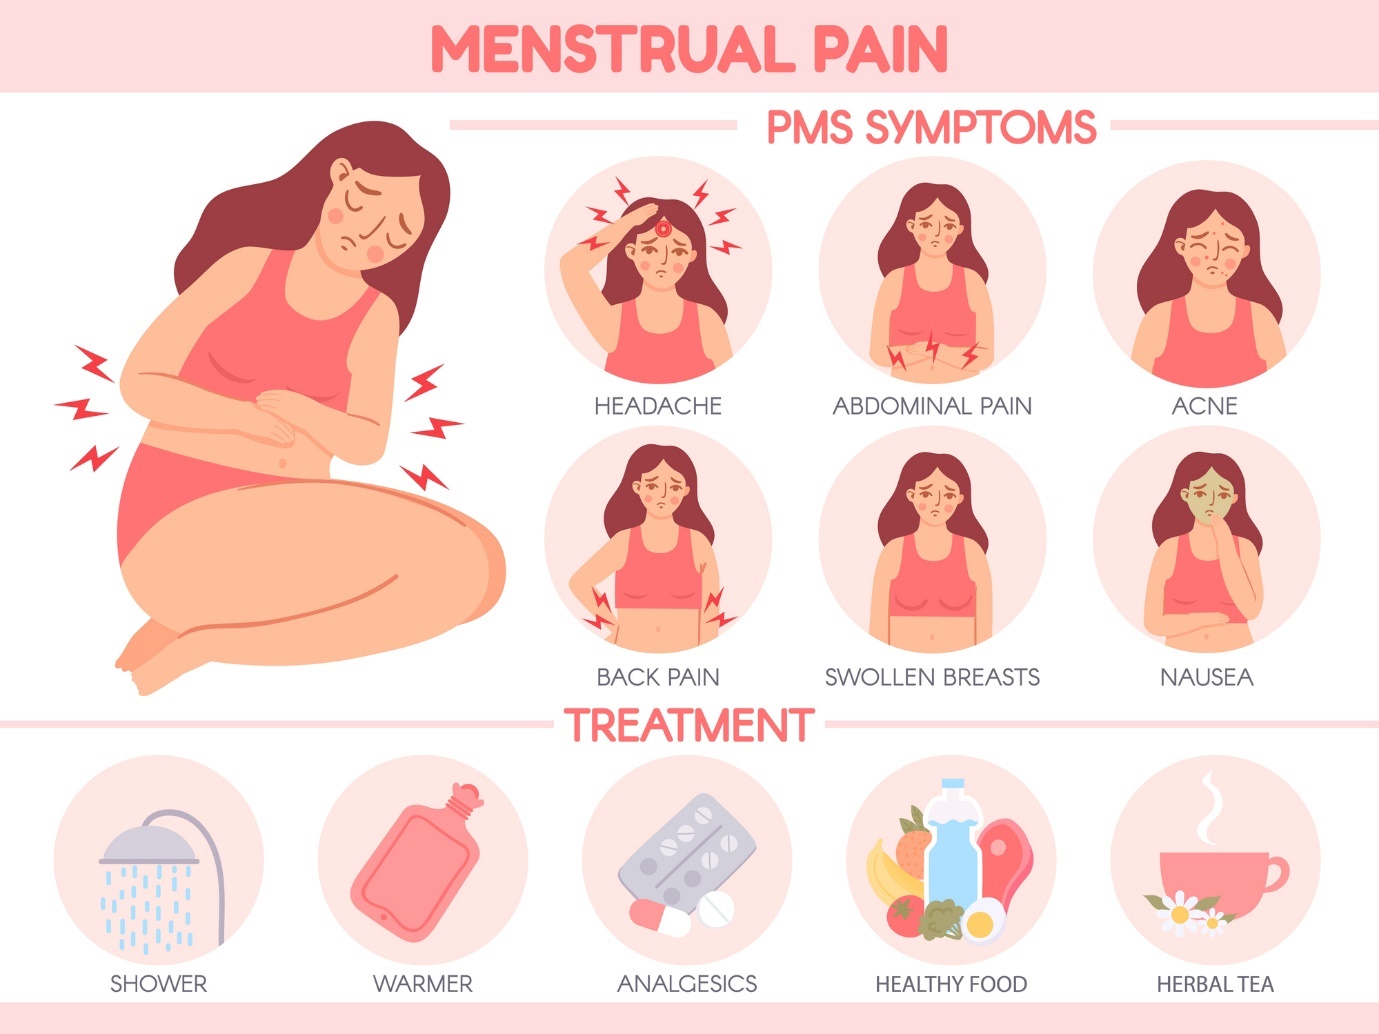 Menstruationsschmerzen. PMS-Symptome: Kopfschmerzen, Unterleibsschmerzen, Akne, Rückenschmerzen, empfindliche Brüste, Übelkeit. Pflege: warme Dusche, Wärmeanwendung, Schmerzmittel, gesunde Ernährung, warmer Kräutertee.